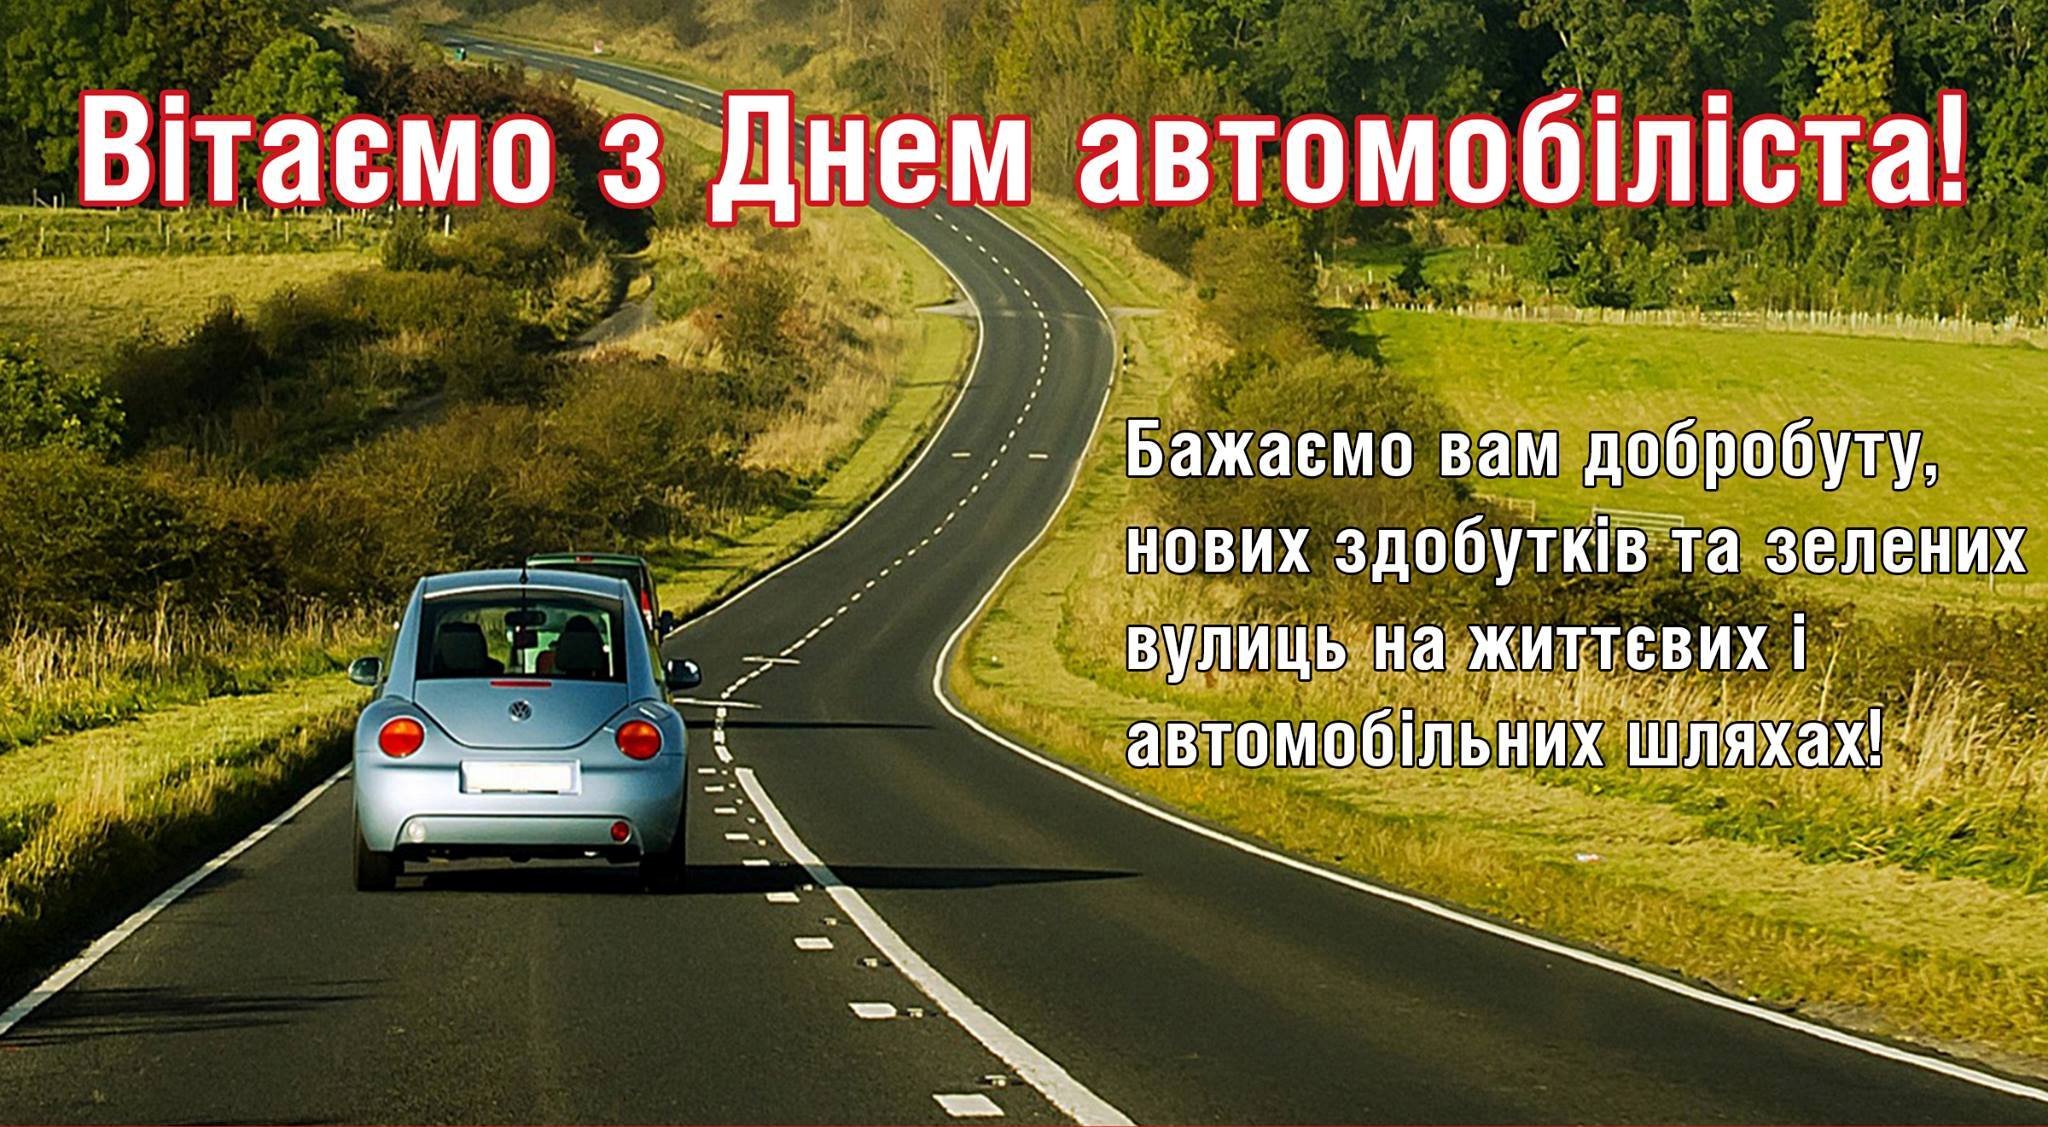 С днем автомобилиста поздравления на украинском языке